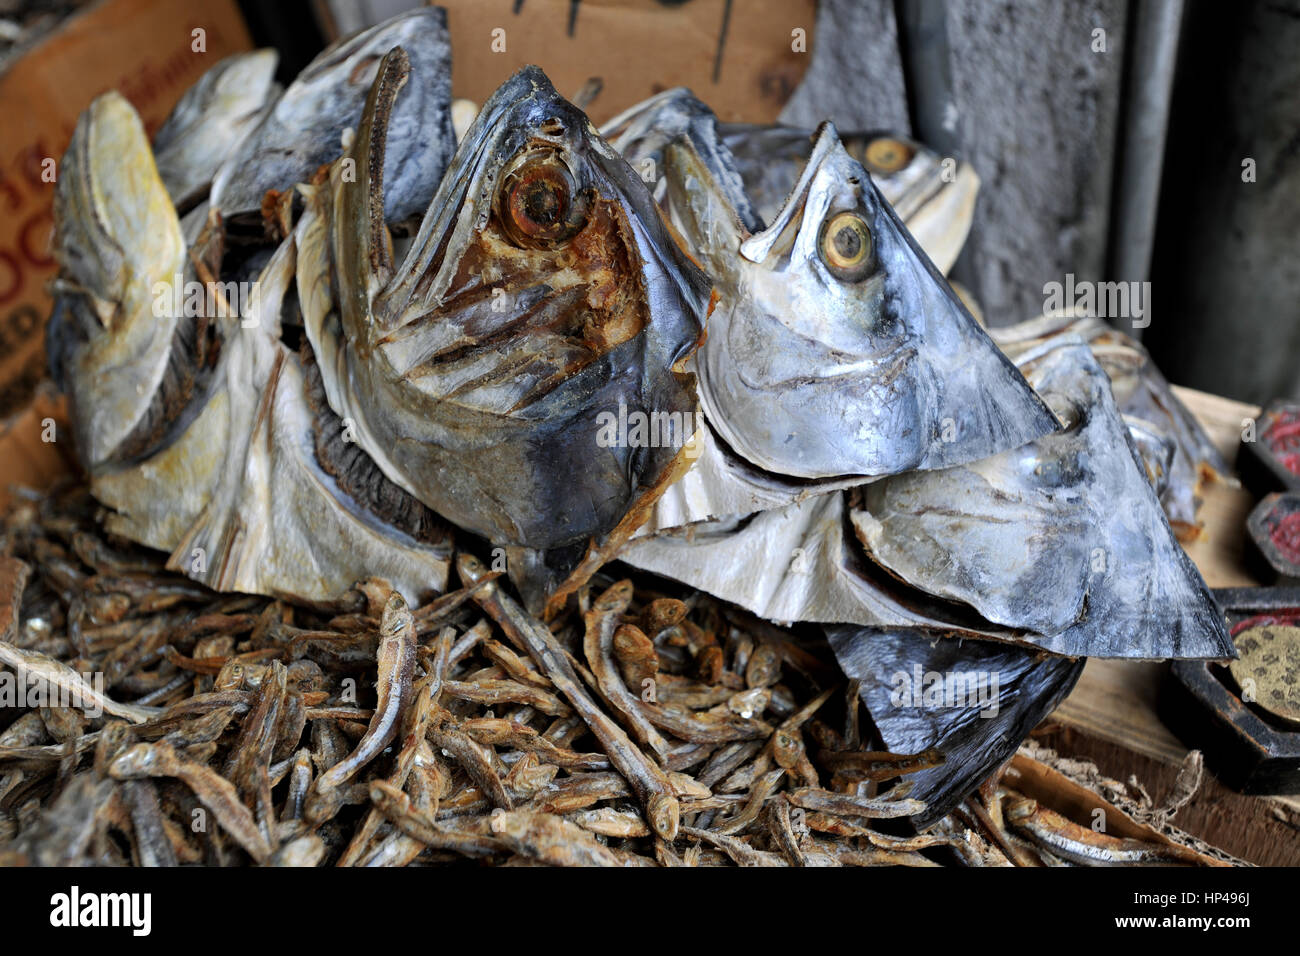 Trocken Sie Fisch Köpfe, Ski Lanka, Asien Stockfoto